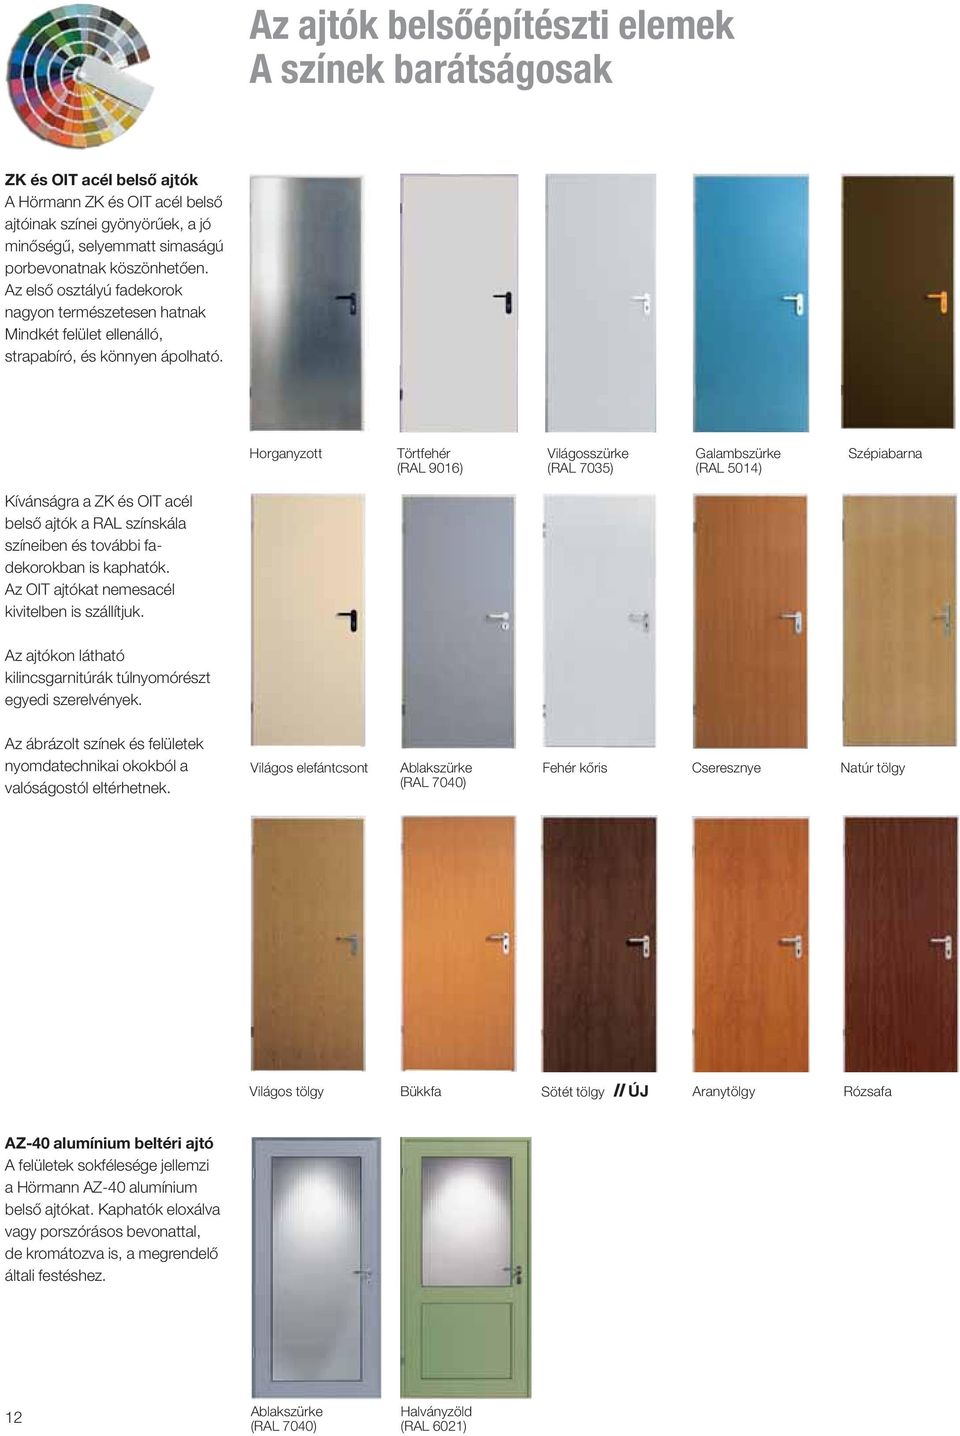 Horganyzott Törtfehér (RAL 9016) Világosszürke (RAL 7035) Galambszürke (RAL 5014) Szépiabarna Kívánságra a ZK és OIT acél belső ajtók a RAL színskála színeiben és további fadekorokban is kaphatók.